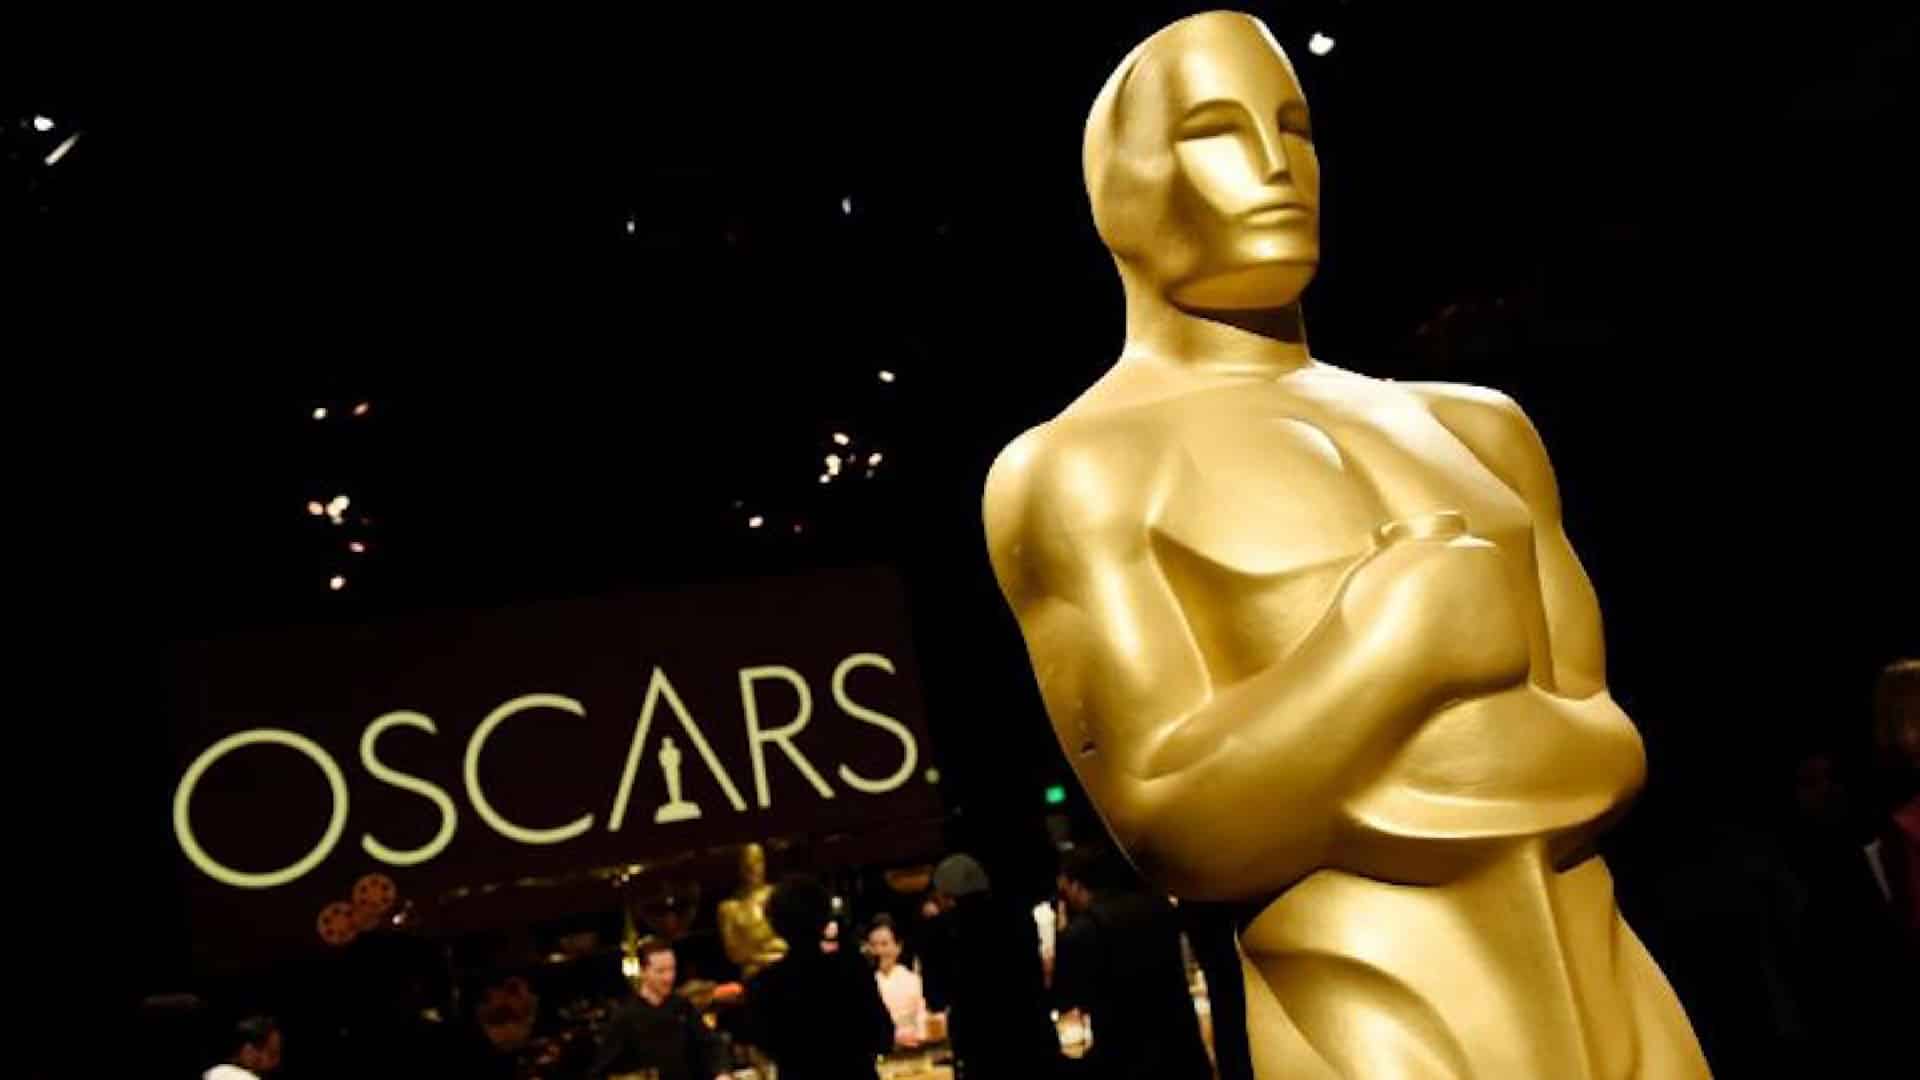 Oscar 2021: le previsioni per i miglior film, attore, attrice e regista